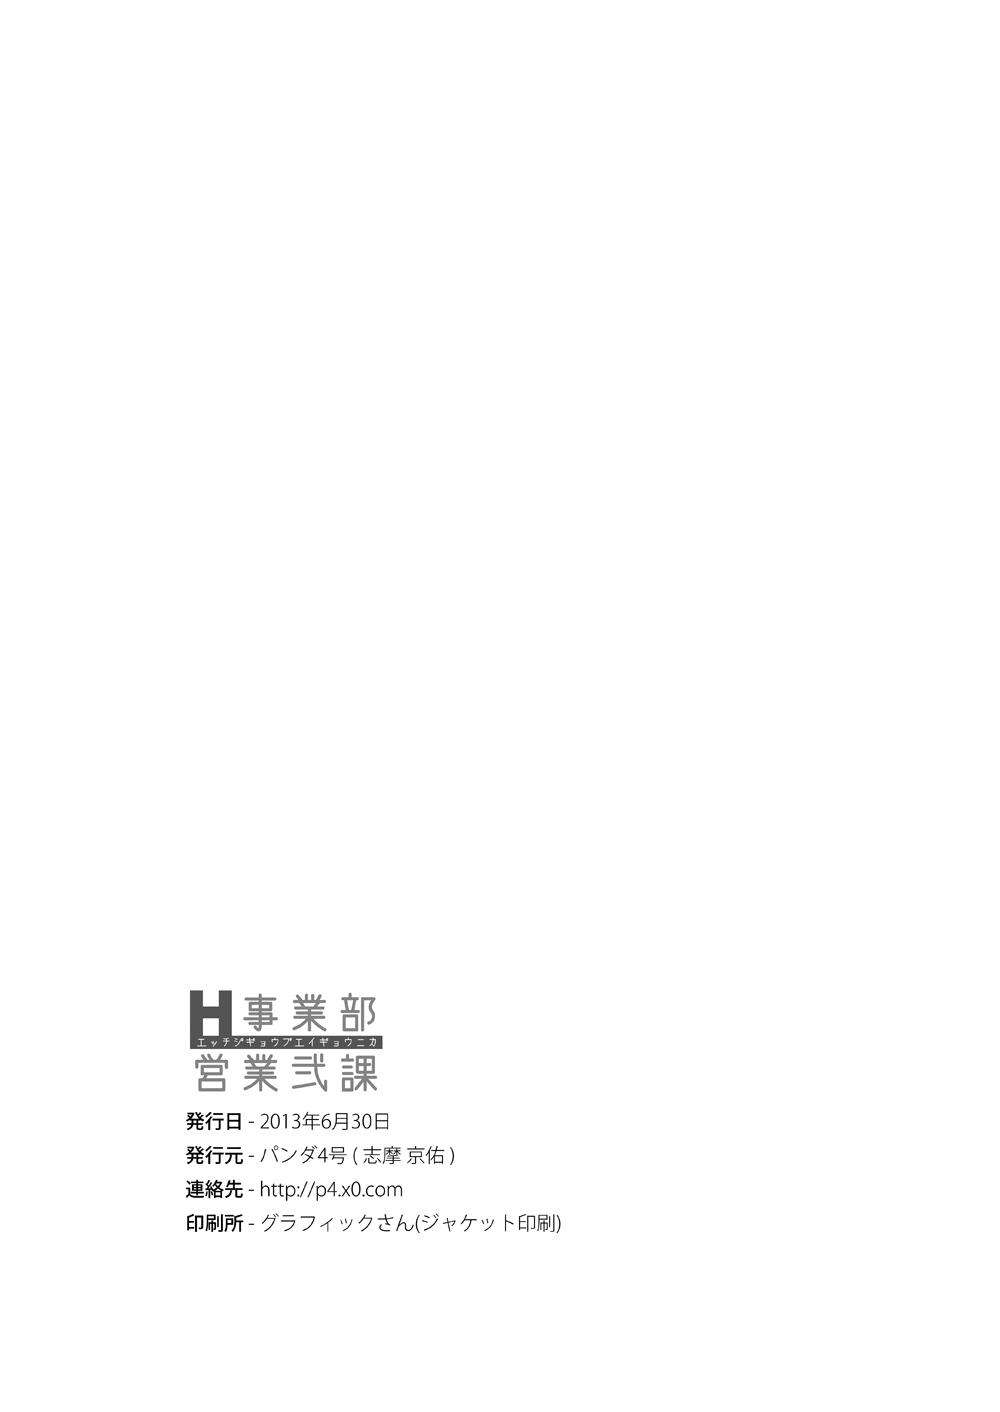 ホ〇メン理解度テスト[朝比奈吉利](ホロライブ) [中国語、日本語] [無修正][Hightway 420]ホ〇メン理解度テスト(Hololive) [Chinese, Japanese] [Decensored](12页)-第1章-图片73